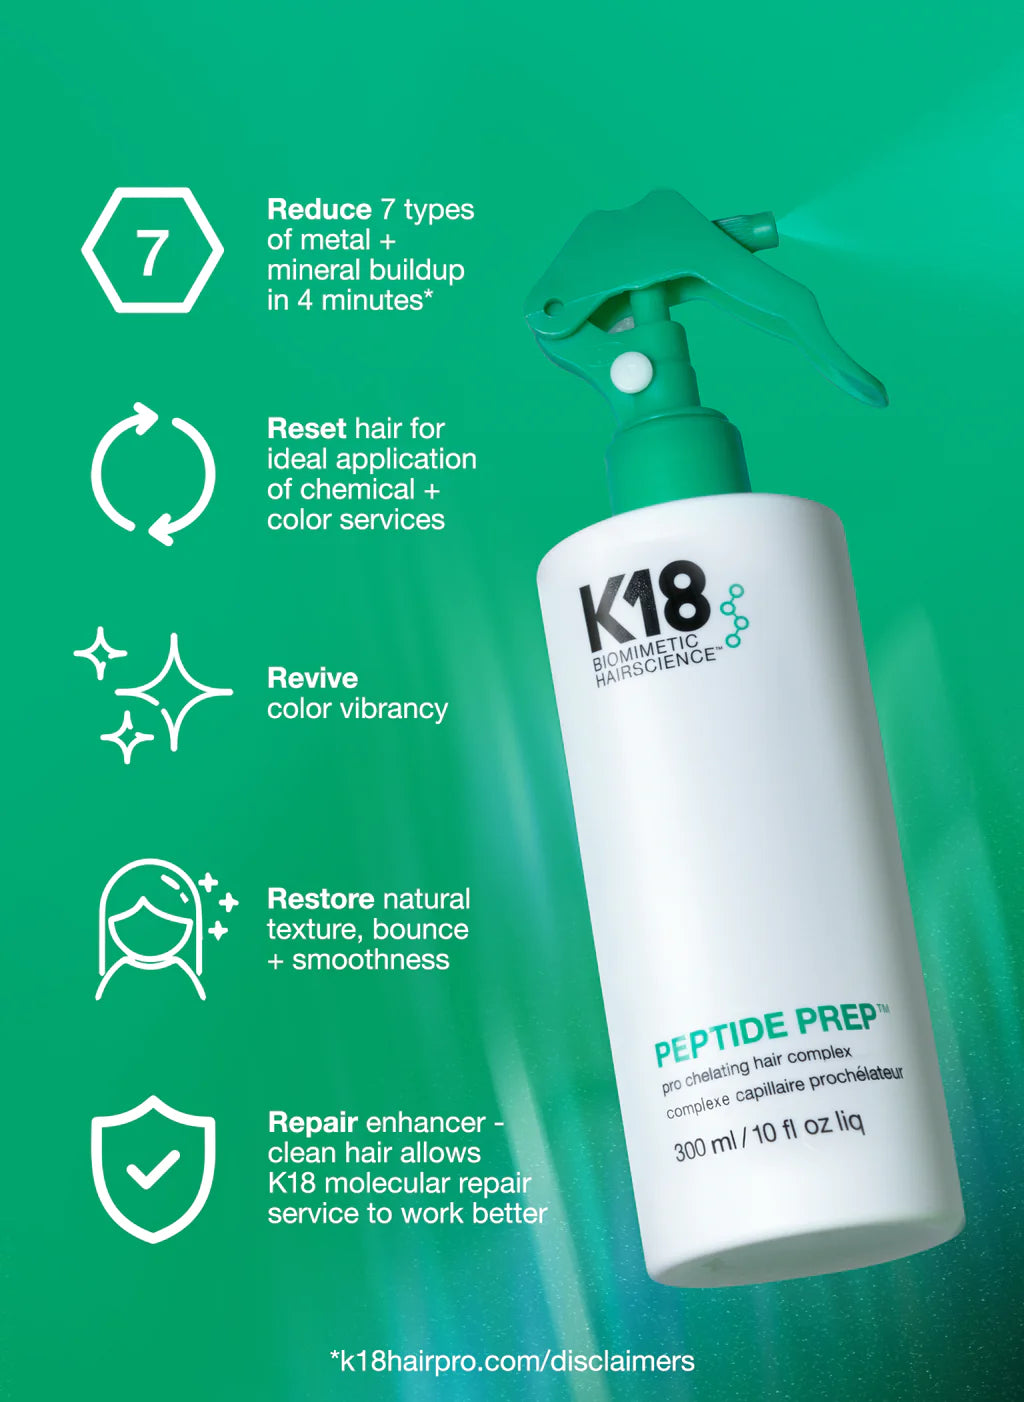 K18 Pro Essentials Kit